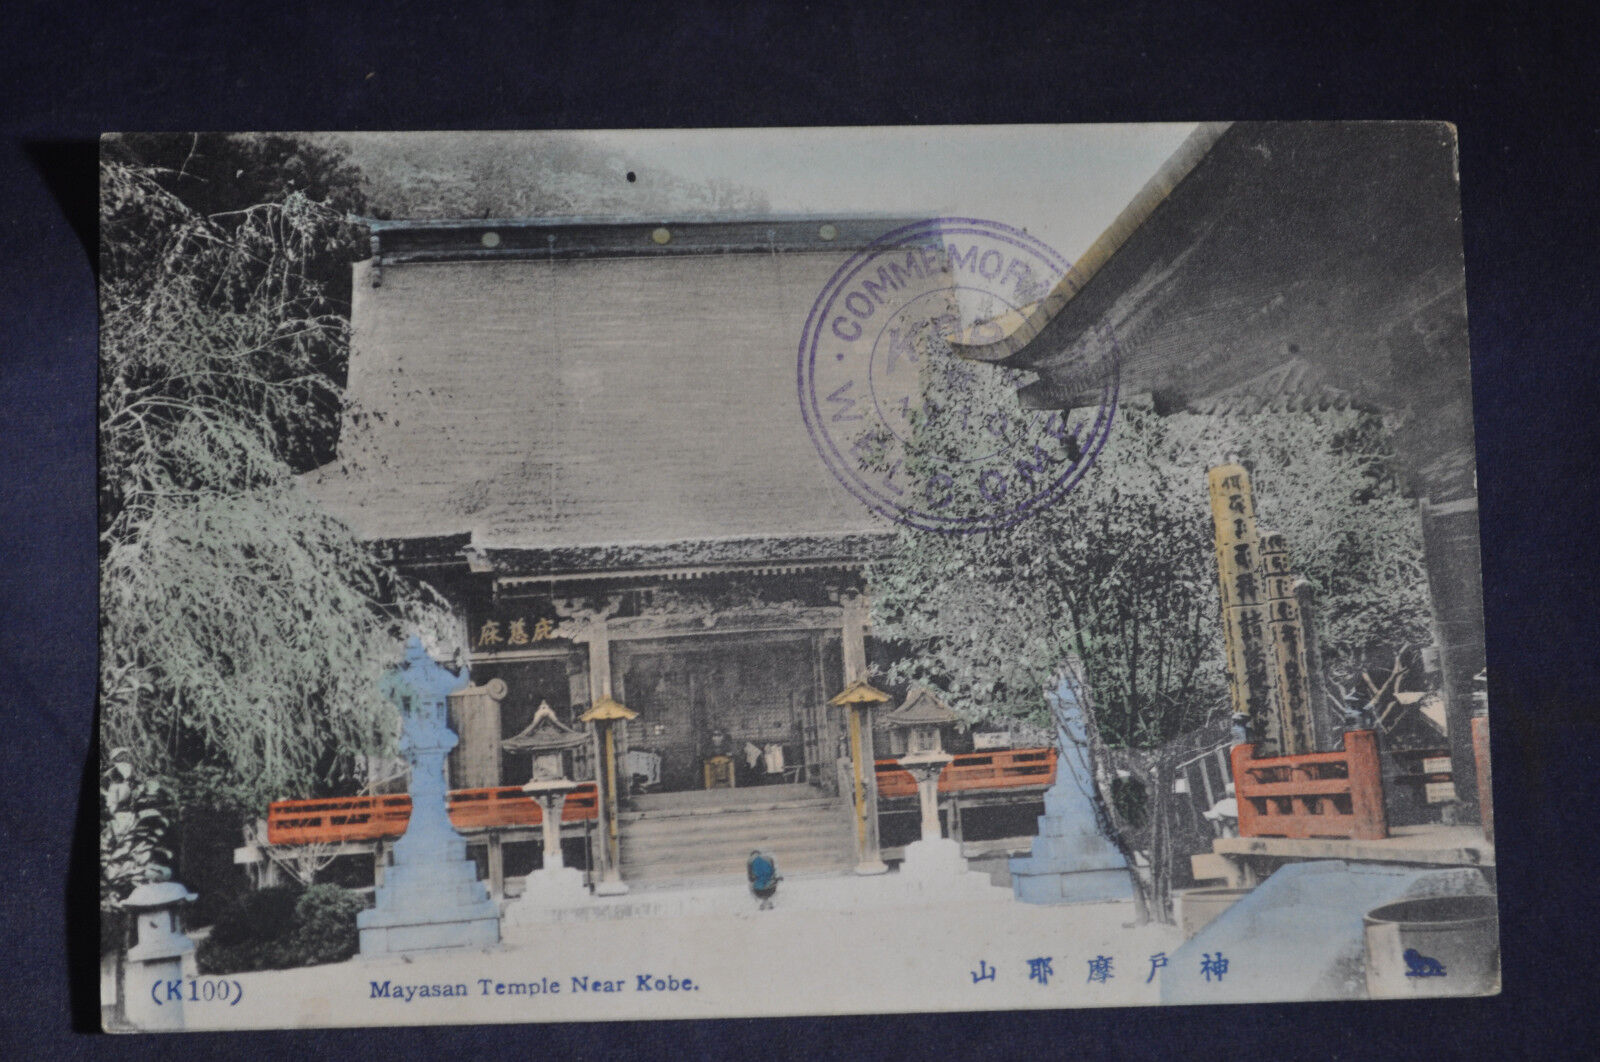 1910 *HAND COLORED* Mayasan Temple near Kobe Postcard *Commemorative Cancel*